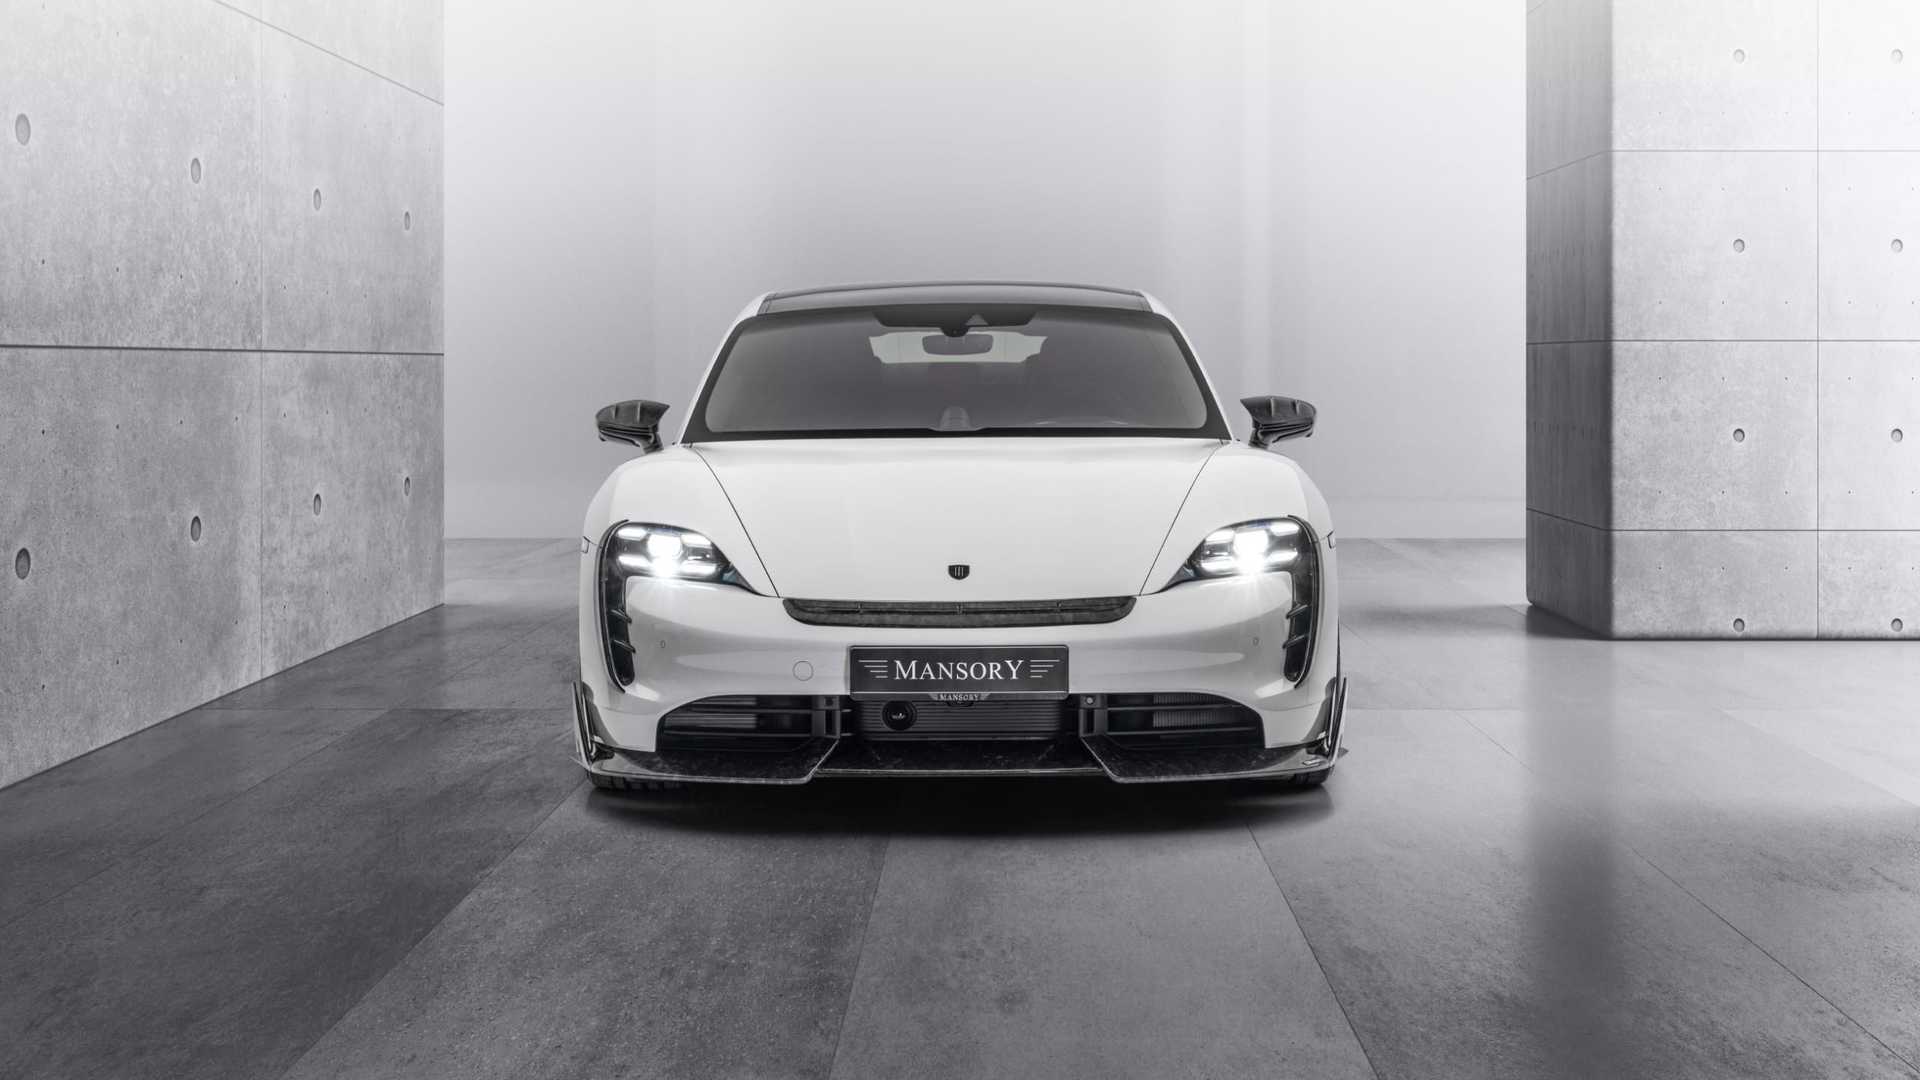 نمای جلو پورشه تایکان تیونینگ منصوری / Mansory Porsche Taycan سفید رنگَ